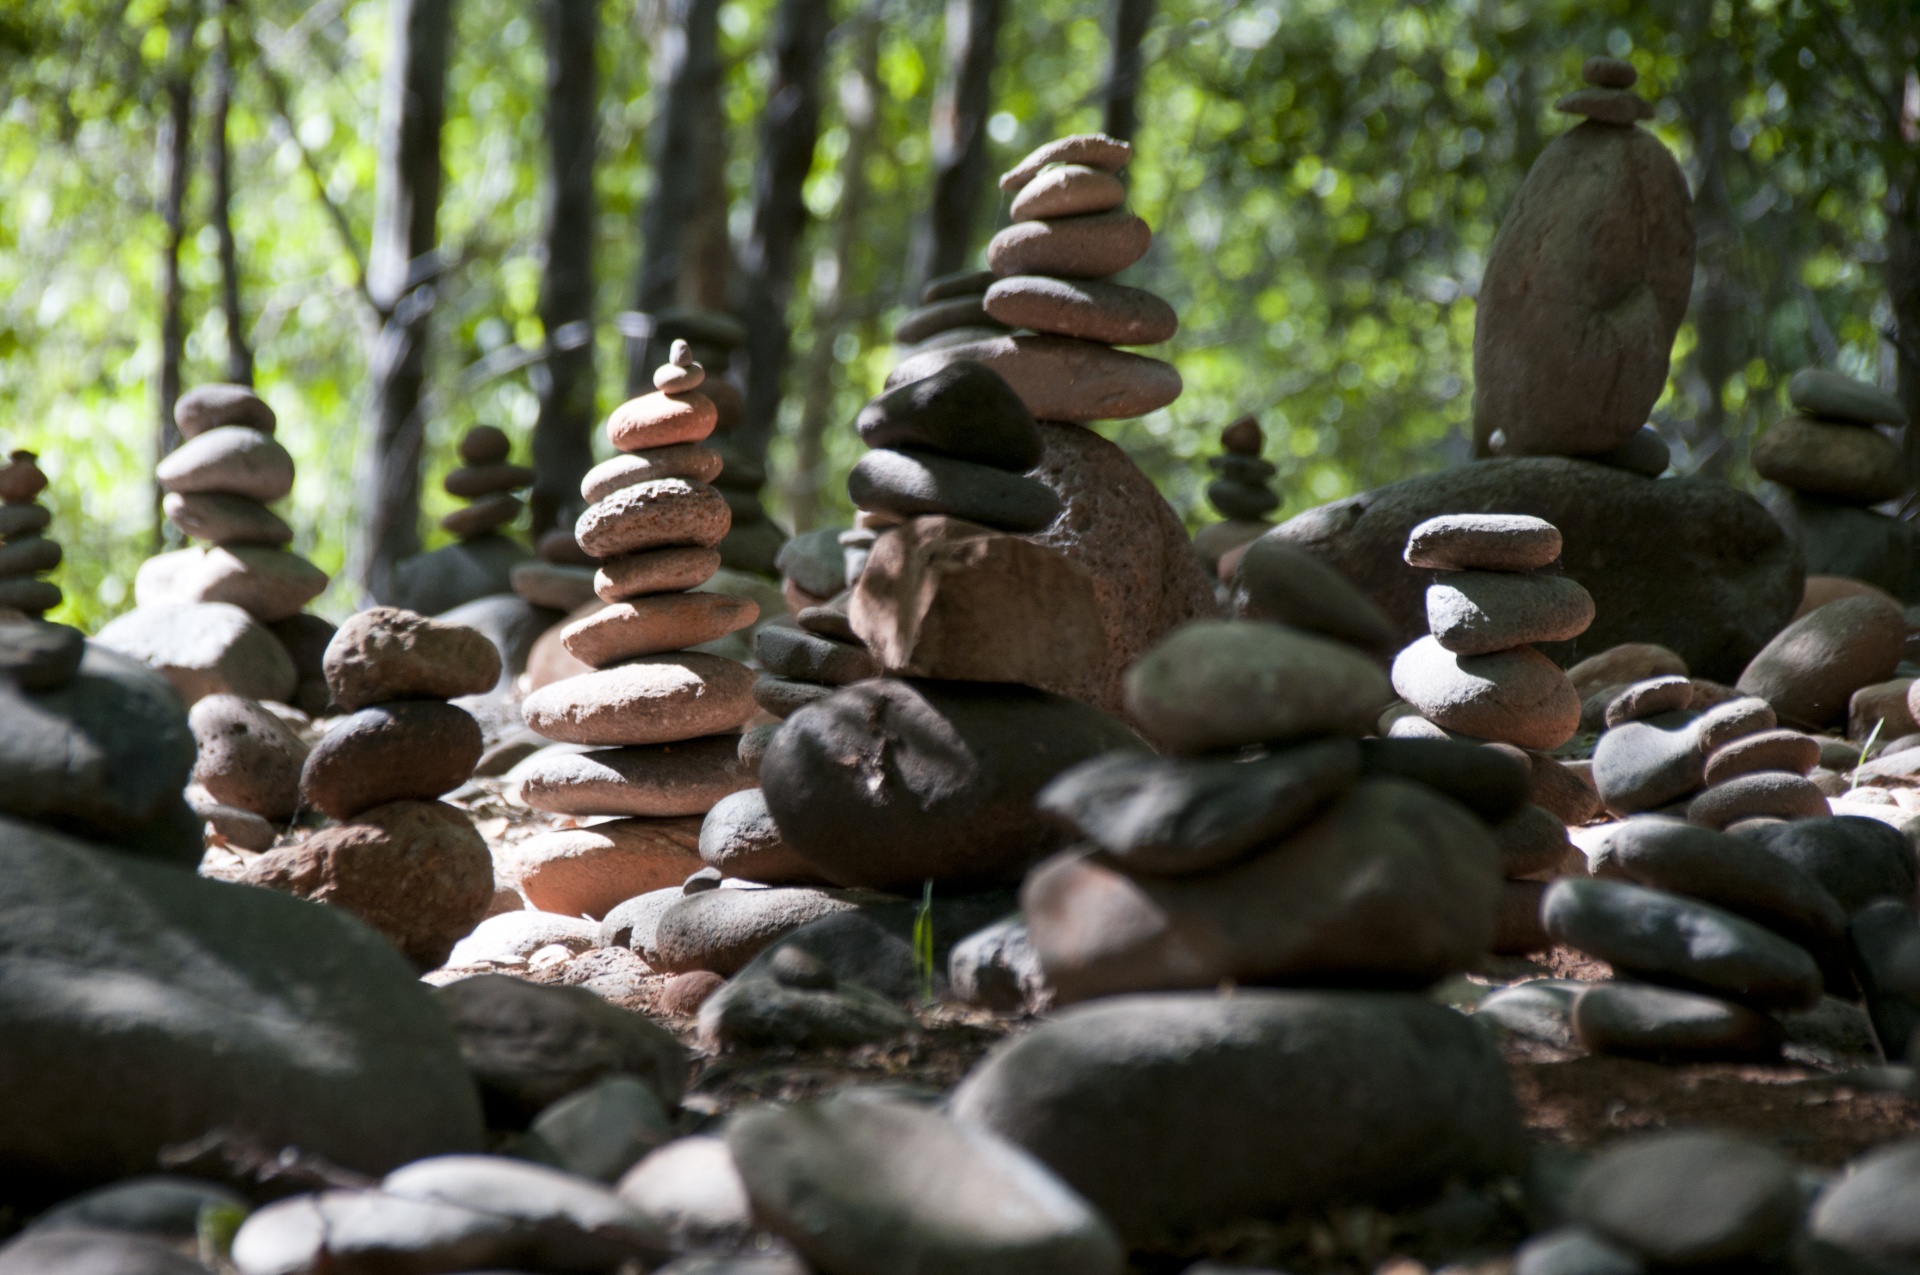 Stapels Zen Rocks